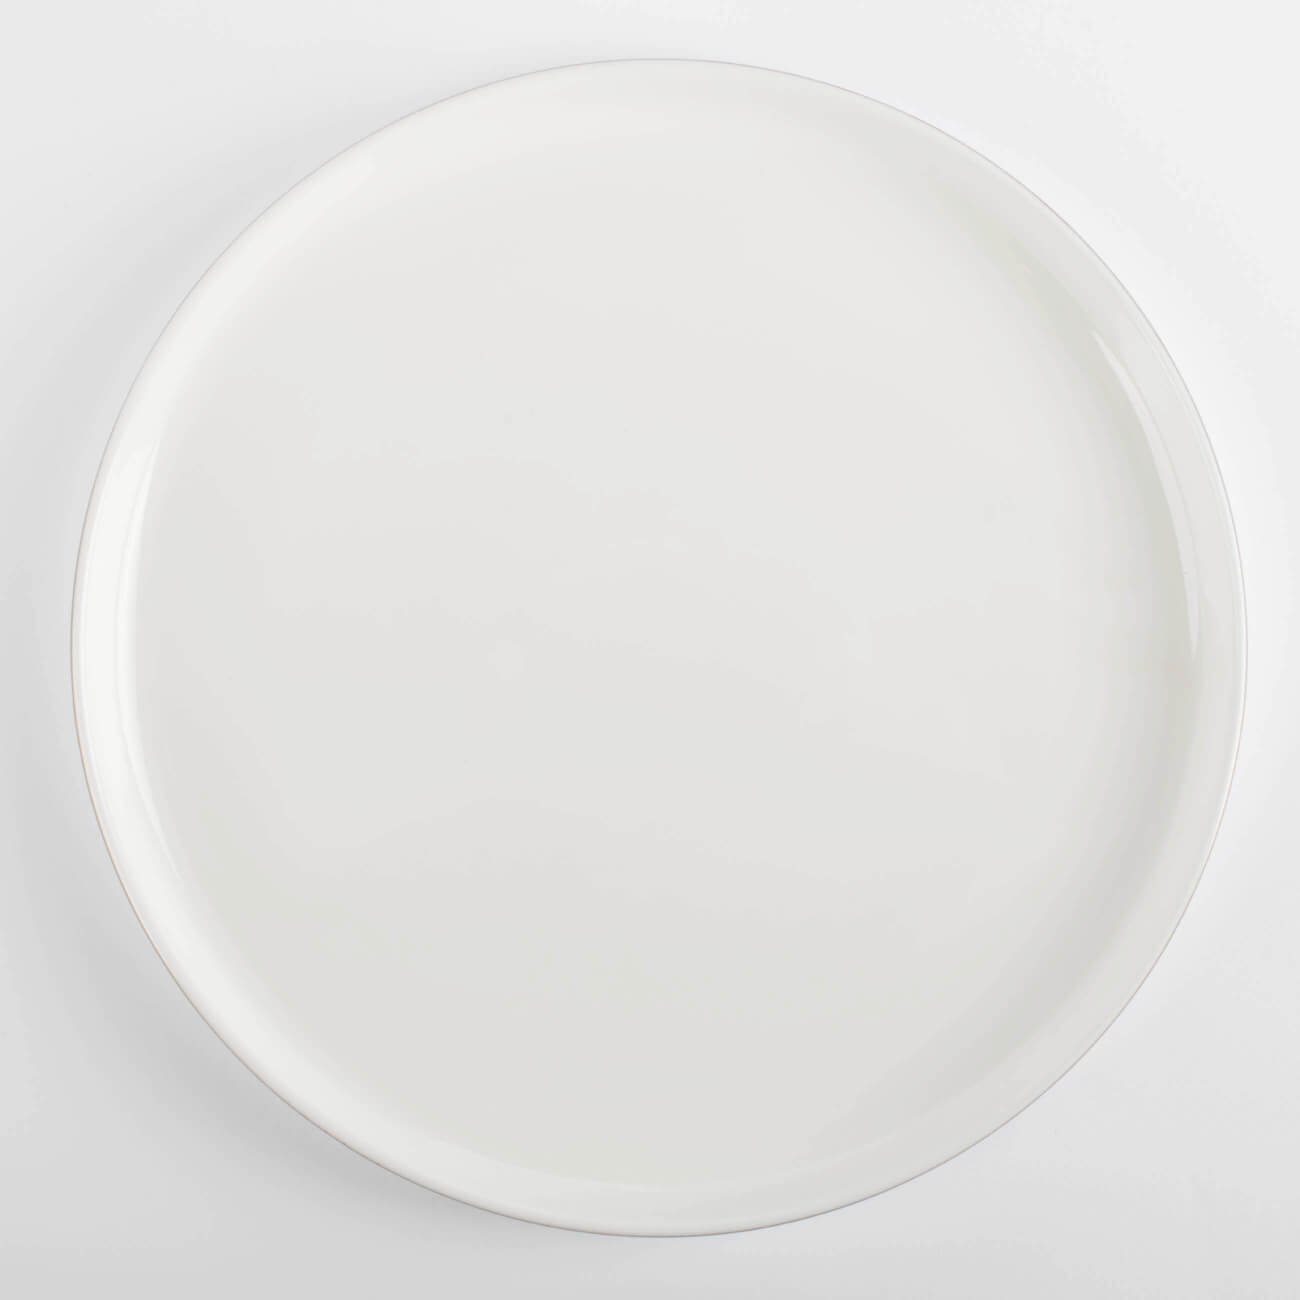 тарелка обеденная cmielow oktawa фарфоровая 27 см 75091 Тарелка обеденная, 26 см, фарфор F, белая, Ideal gold